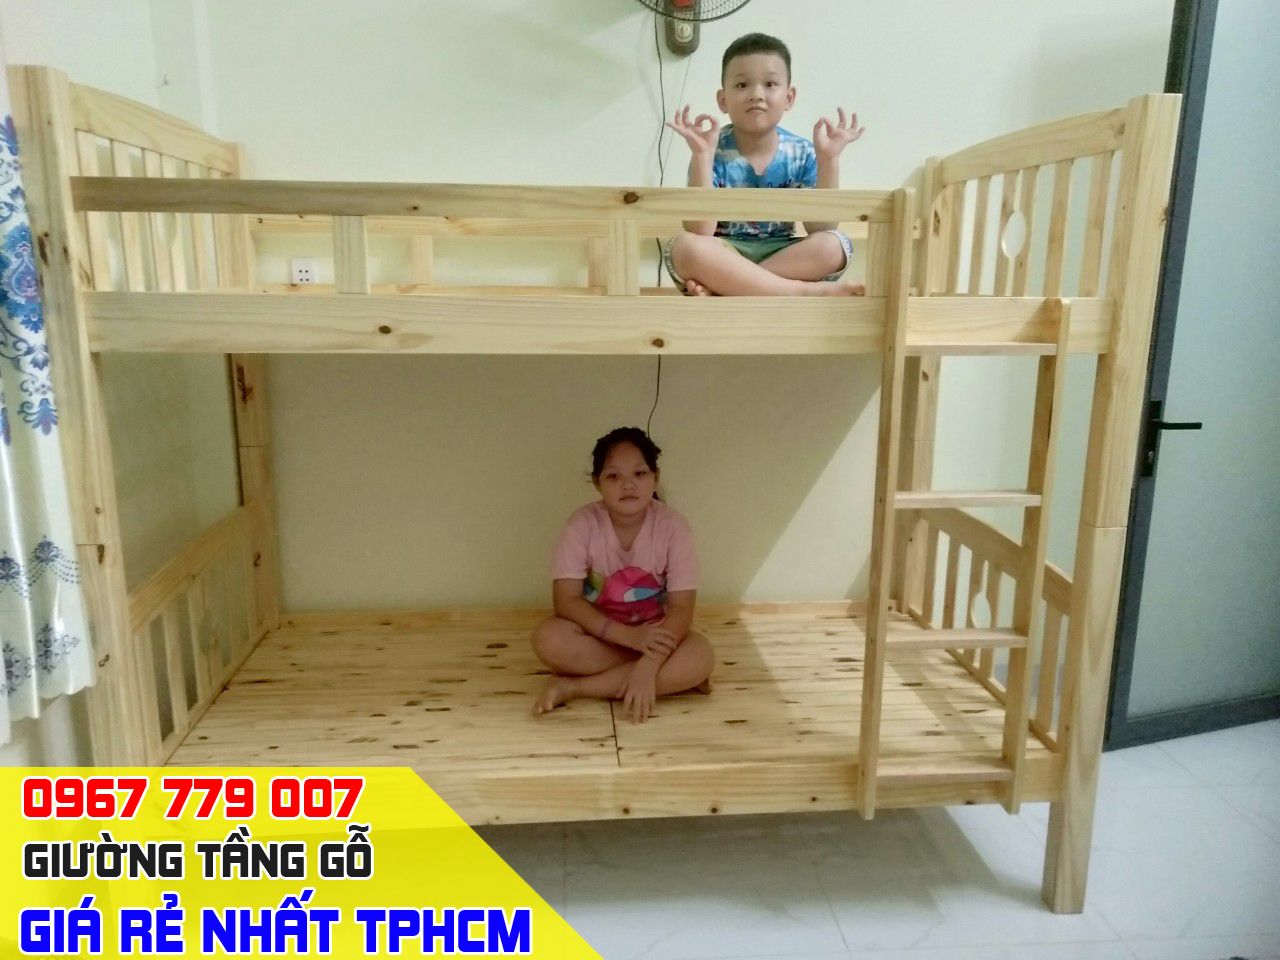 CH bán giường tầng trẻ em giá rẻ uy tín nhất Quận Gò Vấp TPHCM 15